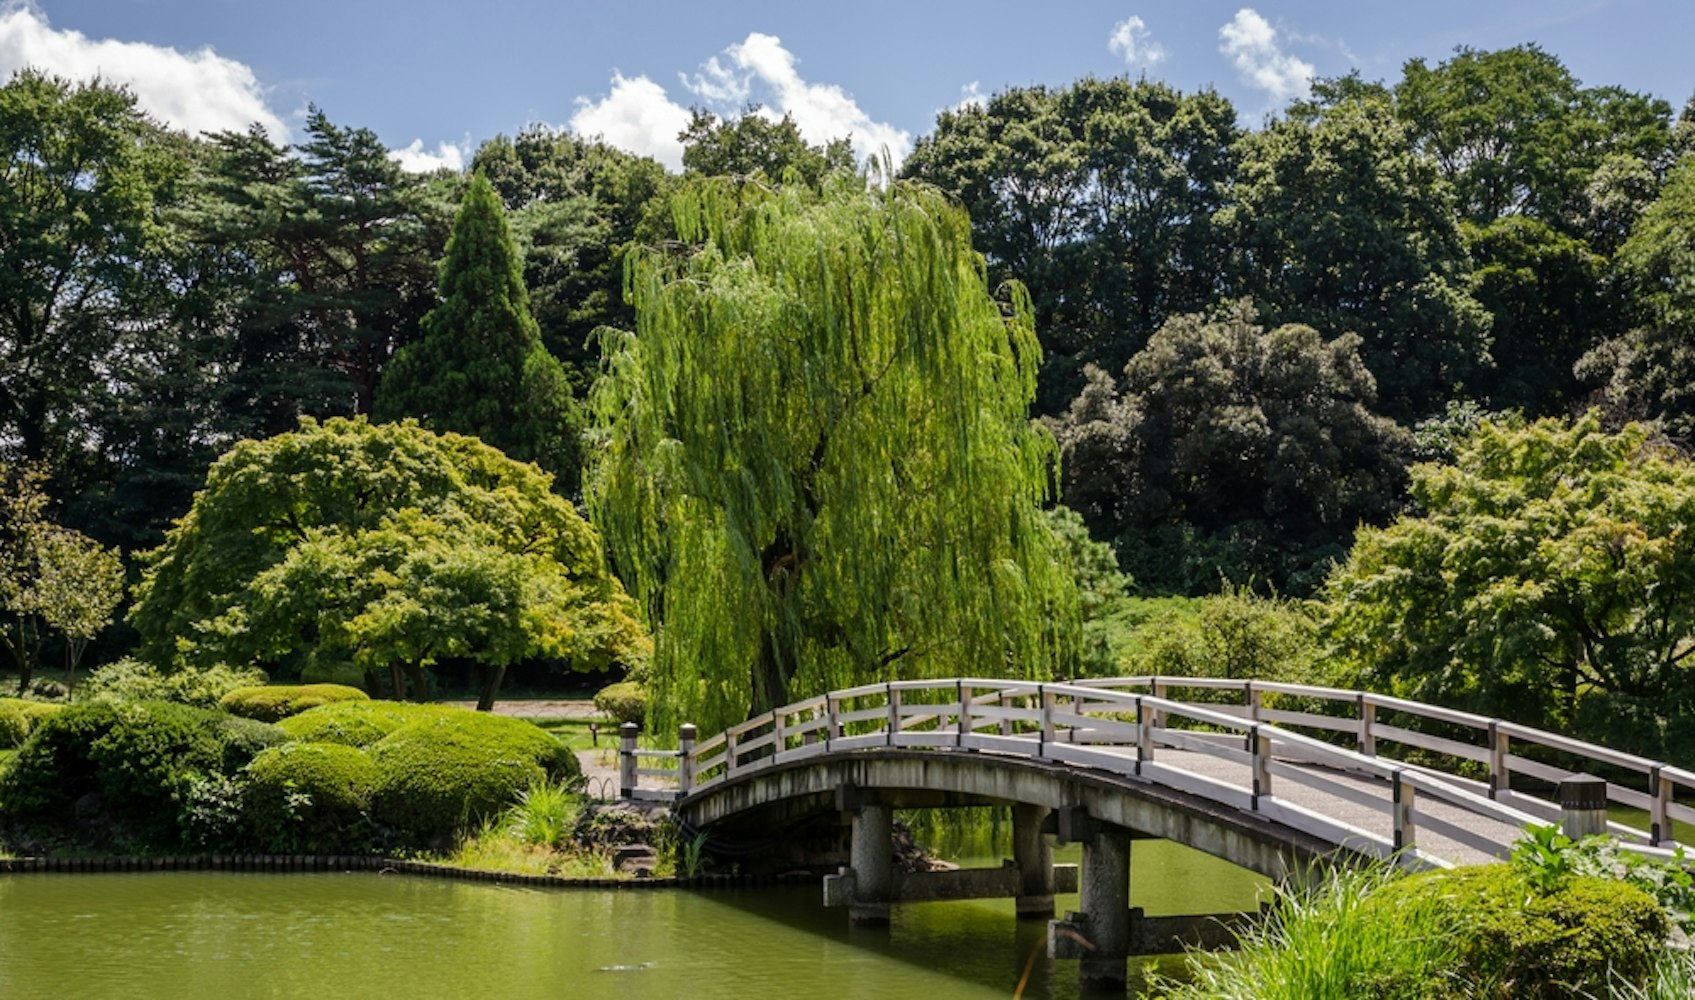 Ninomaru Garden in Tokyo Japan during summer day